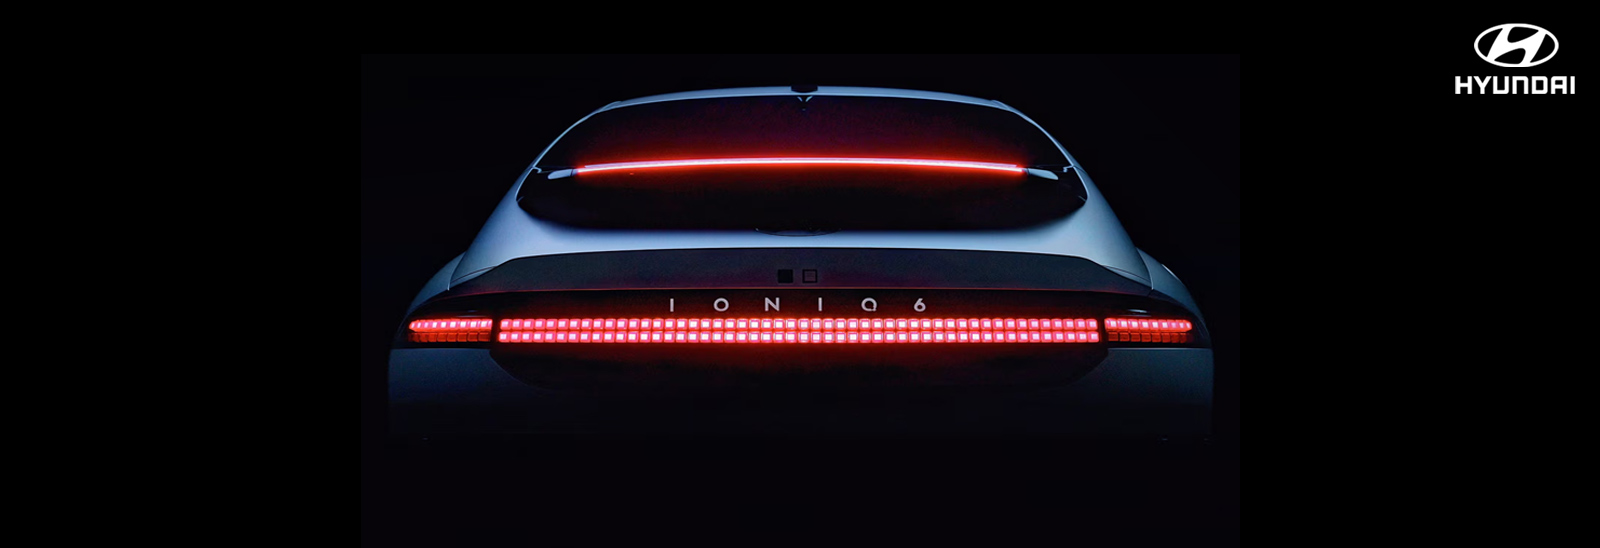 Hyundai destaca el poder de los píxeles con su nueva campaña  de diseño sobre la iluminación exclusiva de vehículos eléctricos